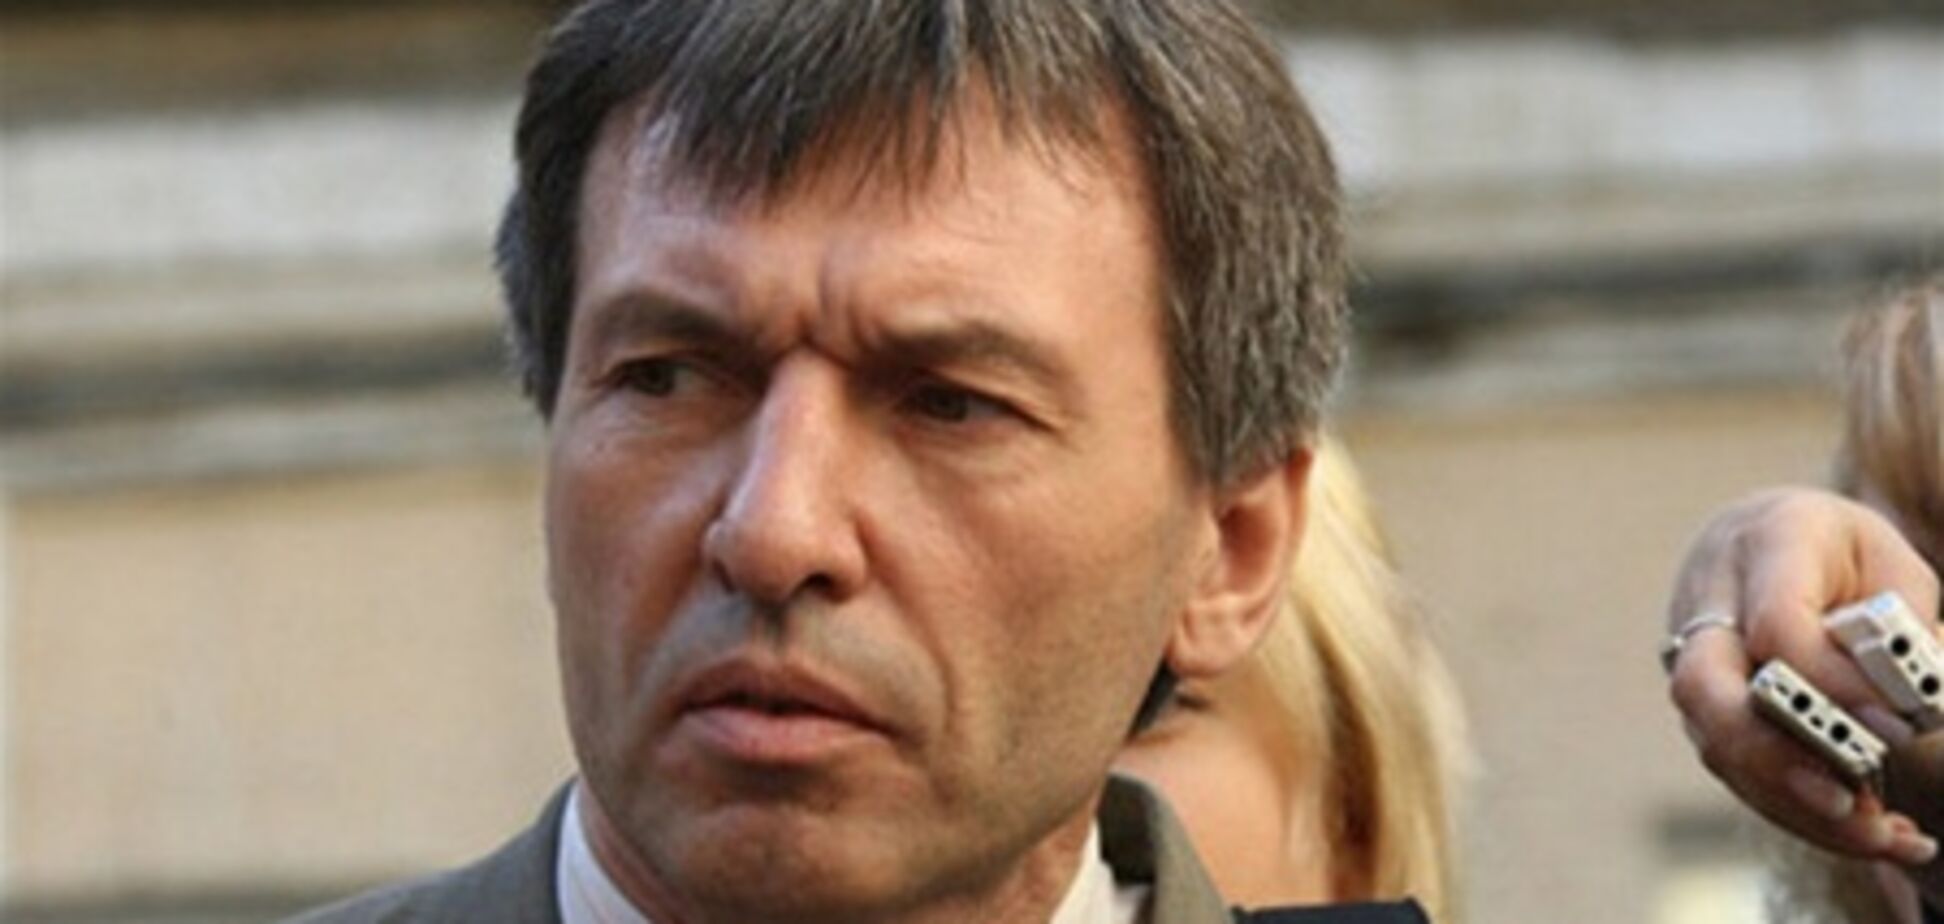 Адвокат: власть не даст указания насильно доставить Тимошенко в суд